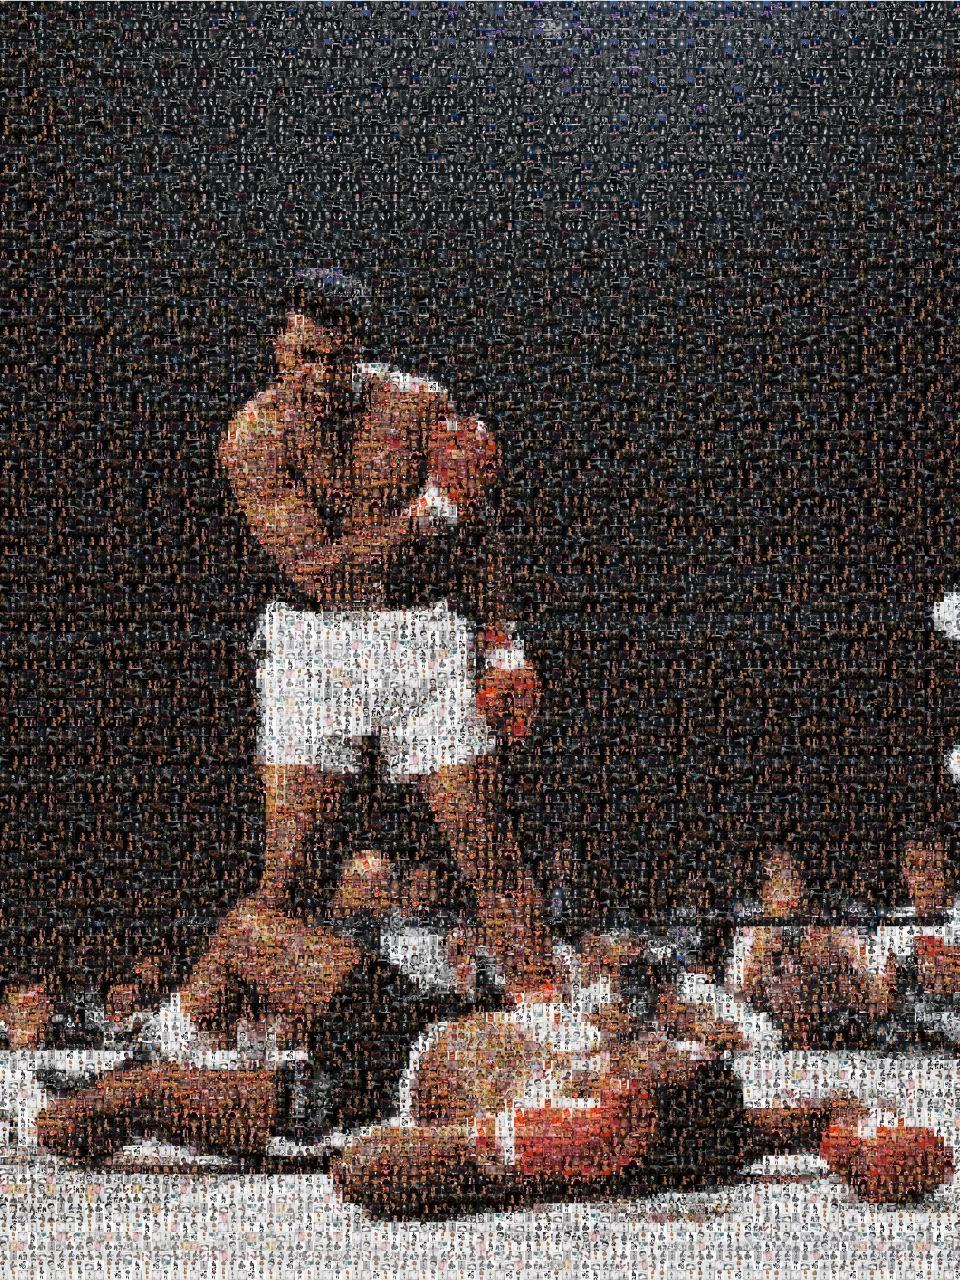 Black and White Photograph de Destro - "Ali" Retrato de Muhammad Ali 28x40  Boxeo Fotografía Fotografía Pop Art